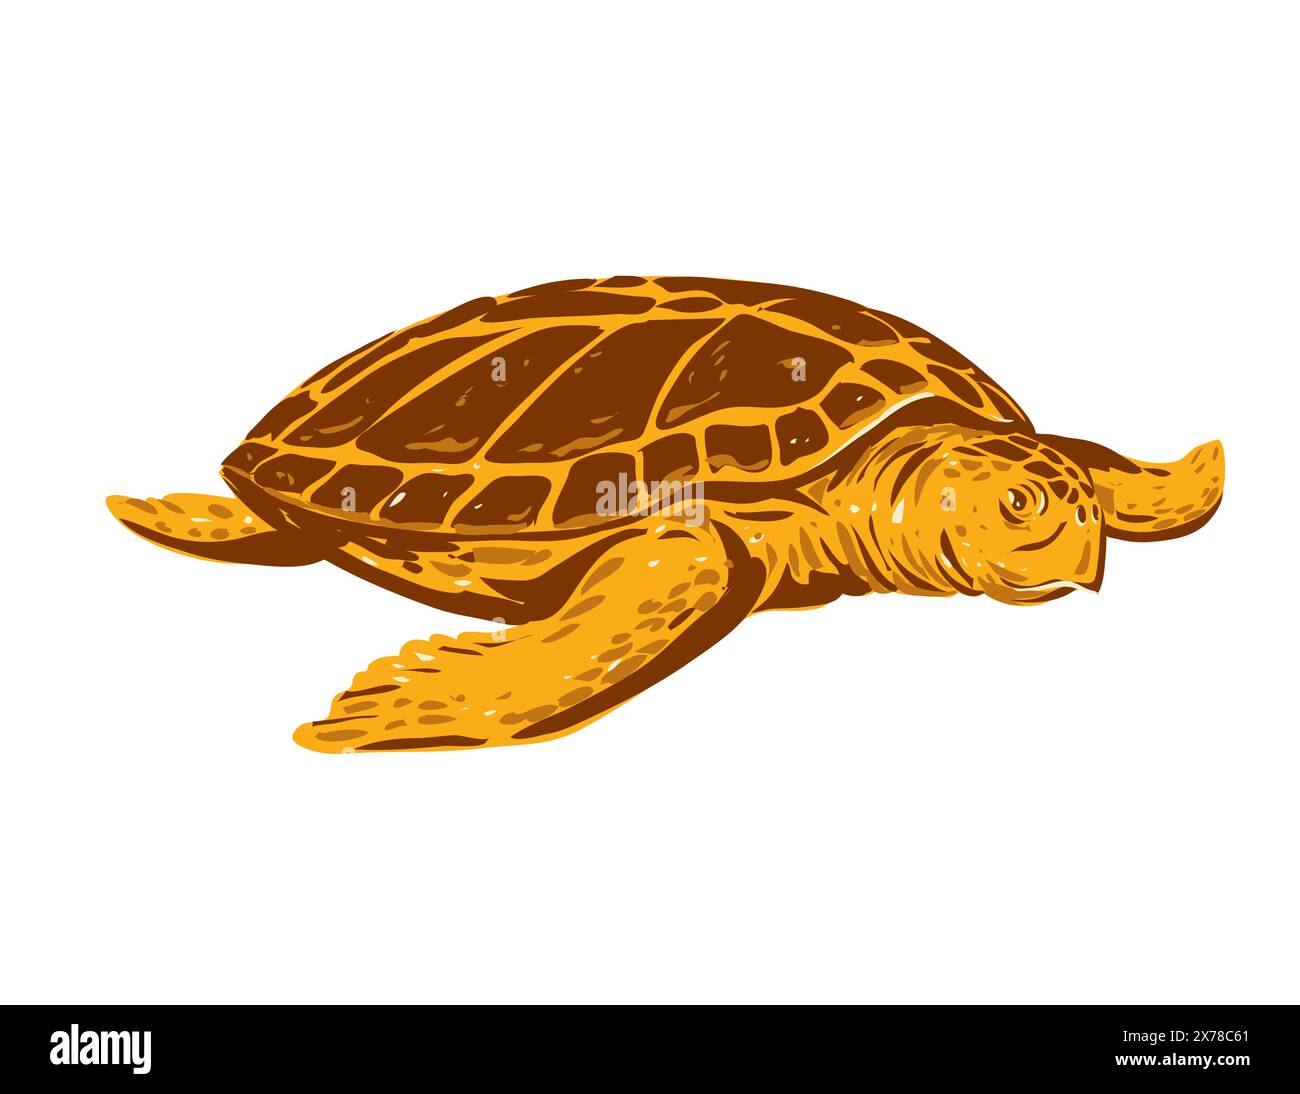 WPA affiche art d'une tortue caouanne ou Caretta caretta, une espèce de tortue océanique vue de face fait dans l'administration du projet de travaux ou fe Illustration de Vecteur